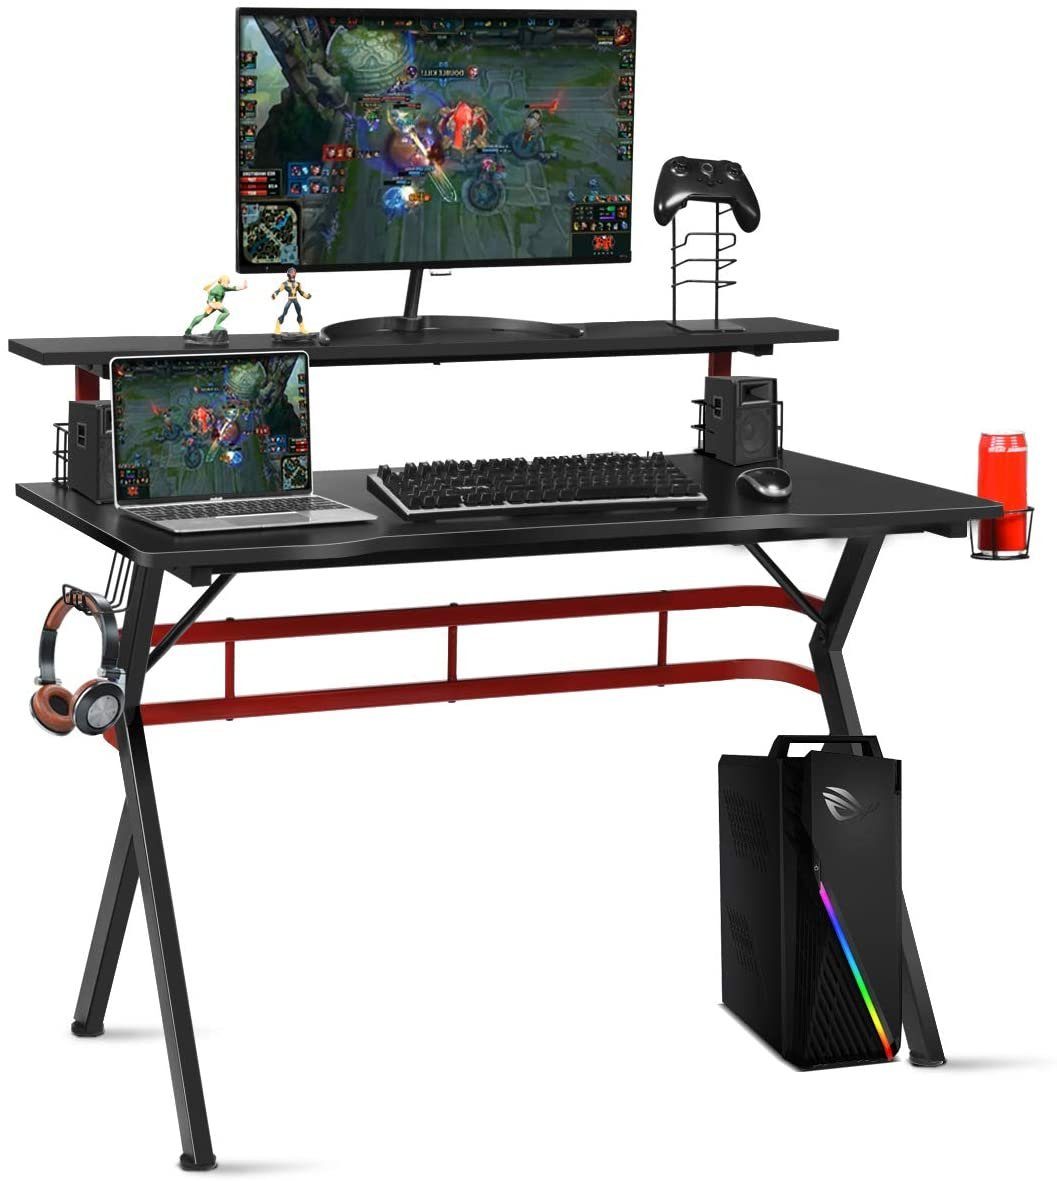 COSTWAY Gamingtisch, 2 mit Haken 120cm schwarz+rot Monitorständer, Boxen-Ständern